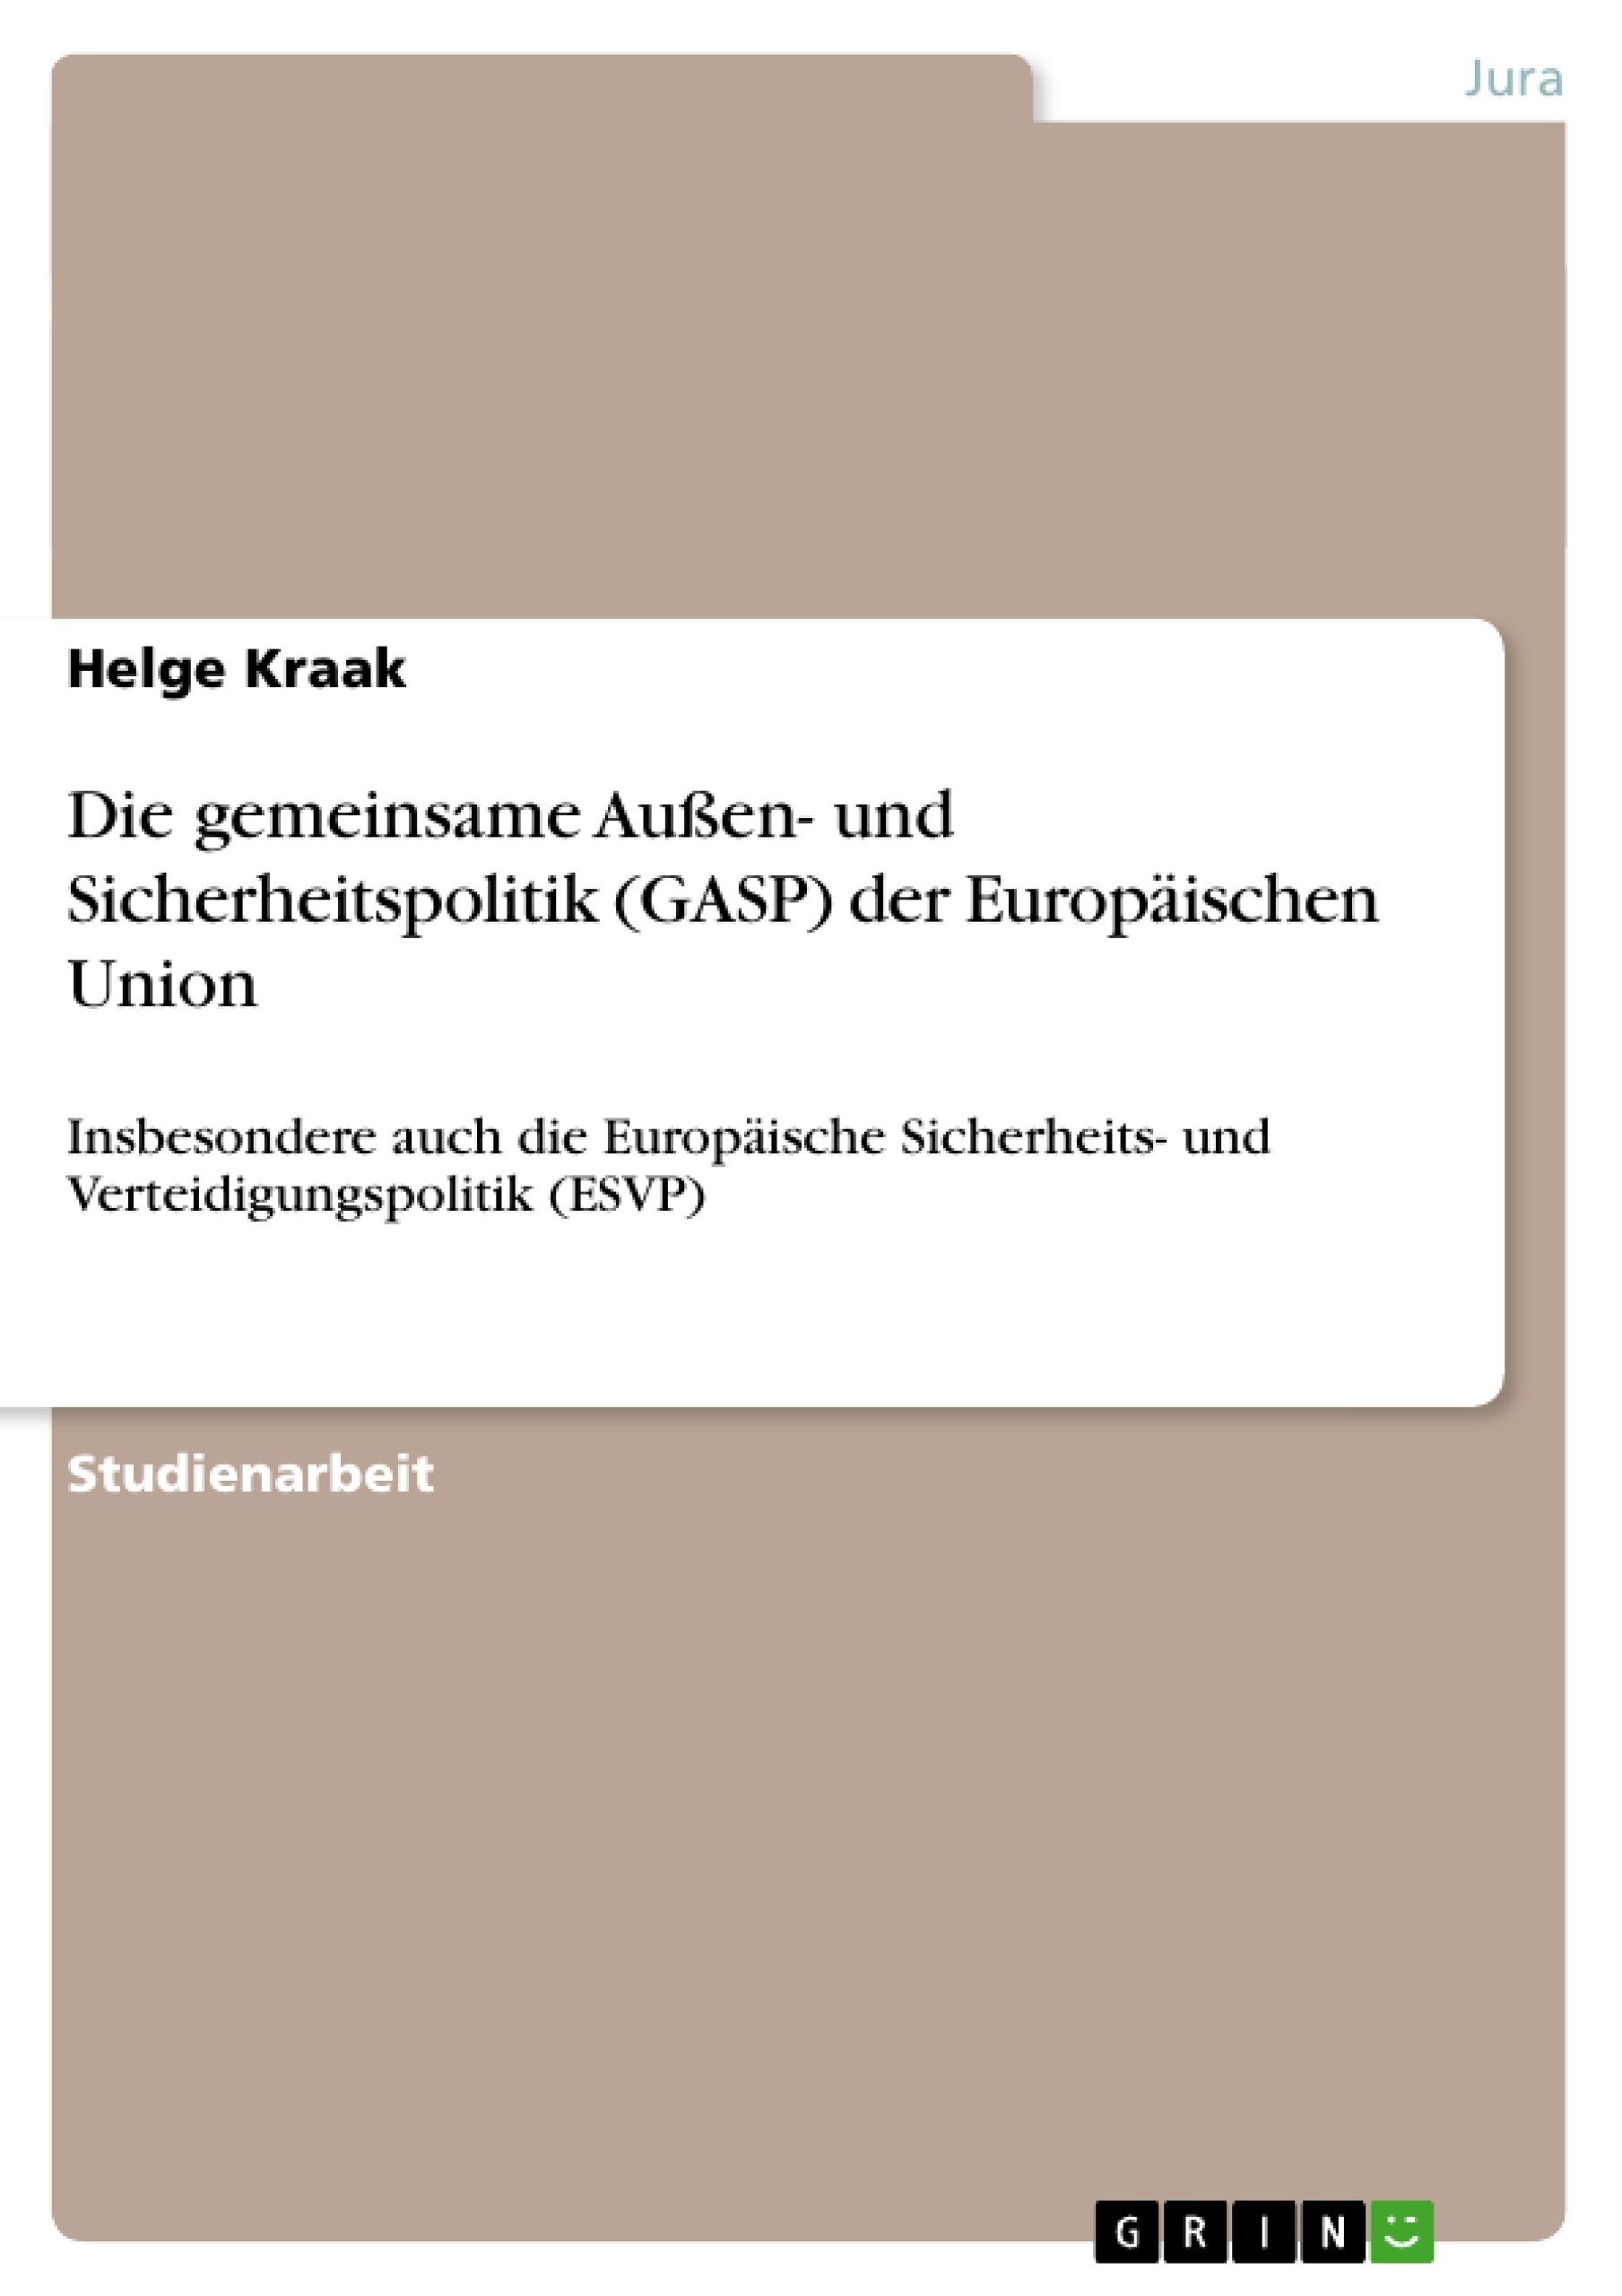 Title: Die gemeinsame Außen- und Sicherheitspolitik (GASP) der Europäischen Union